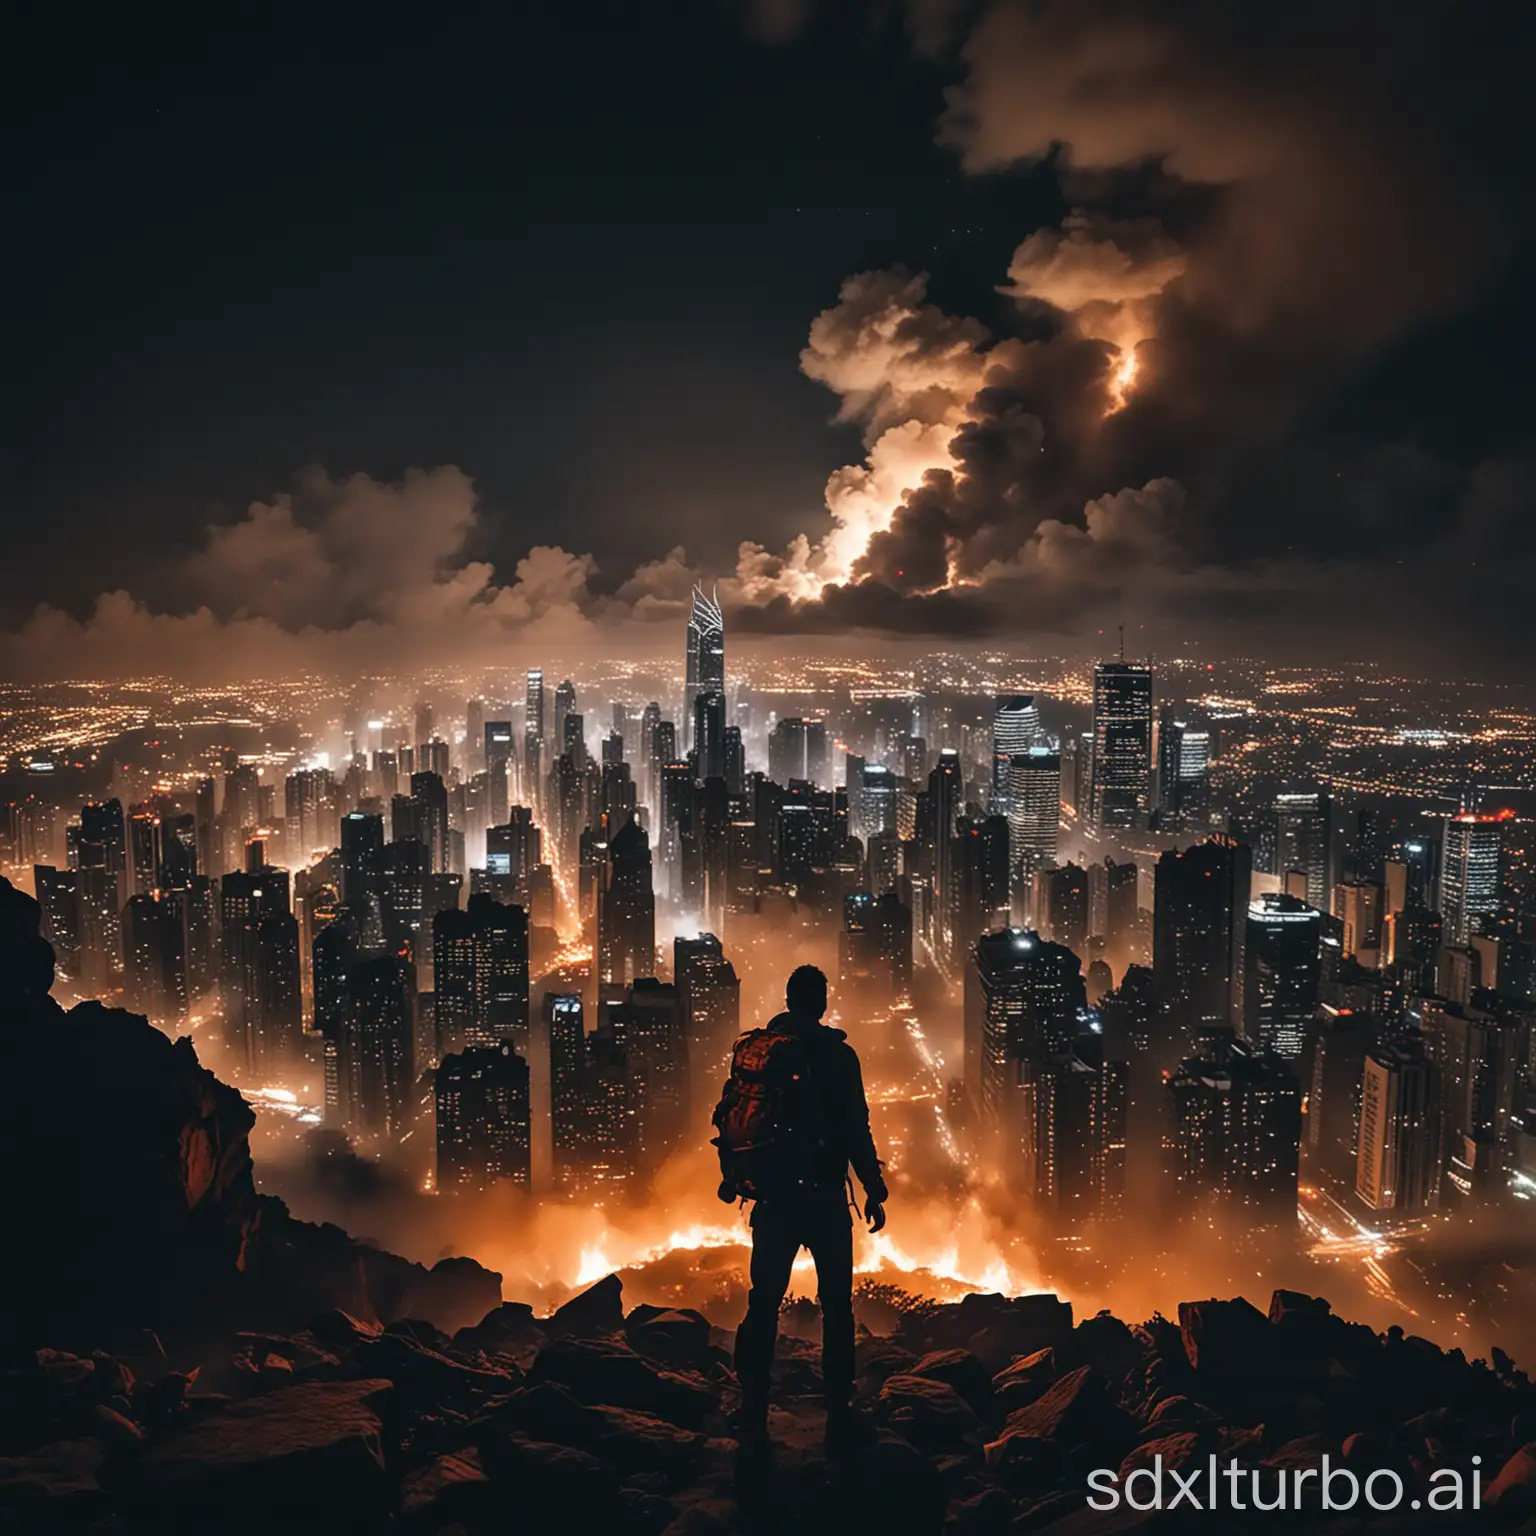 Nighttime-Urban-Explorer-Witnessing-Fiery-Skyscrapers